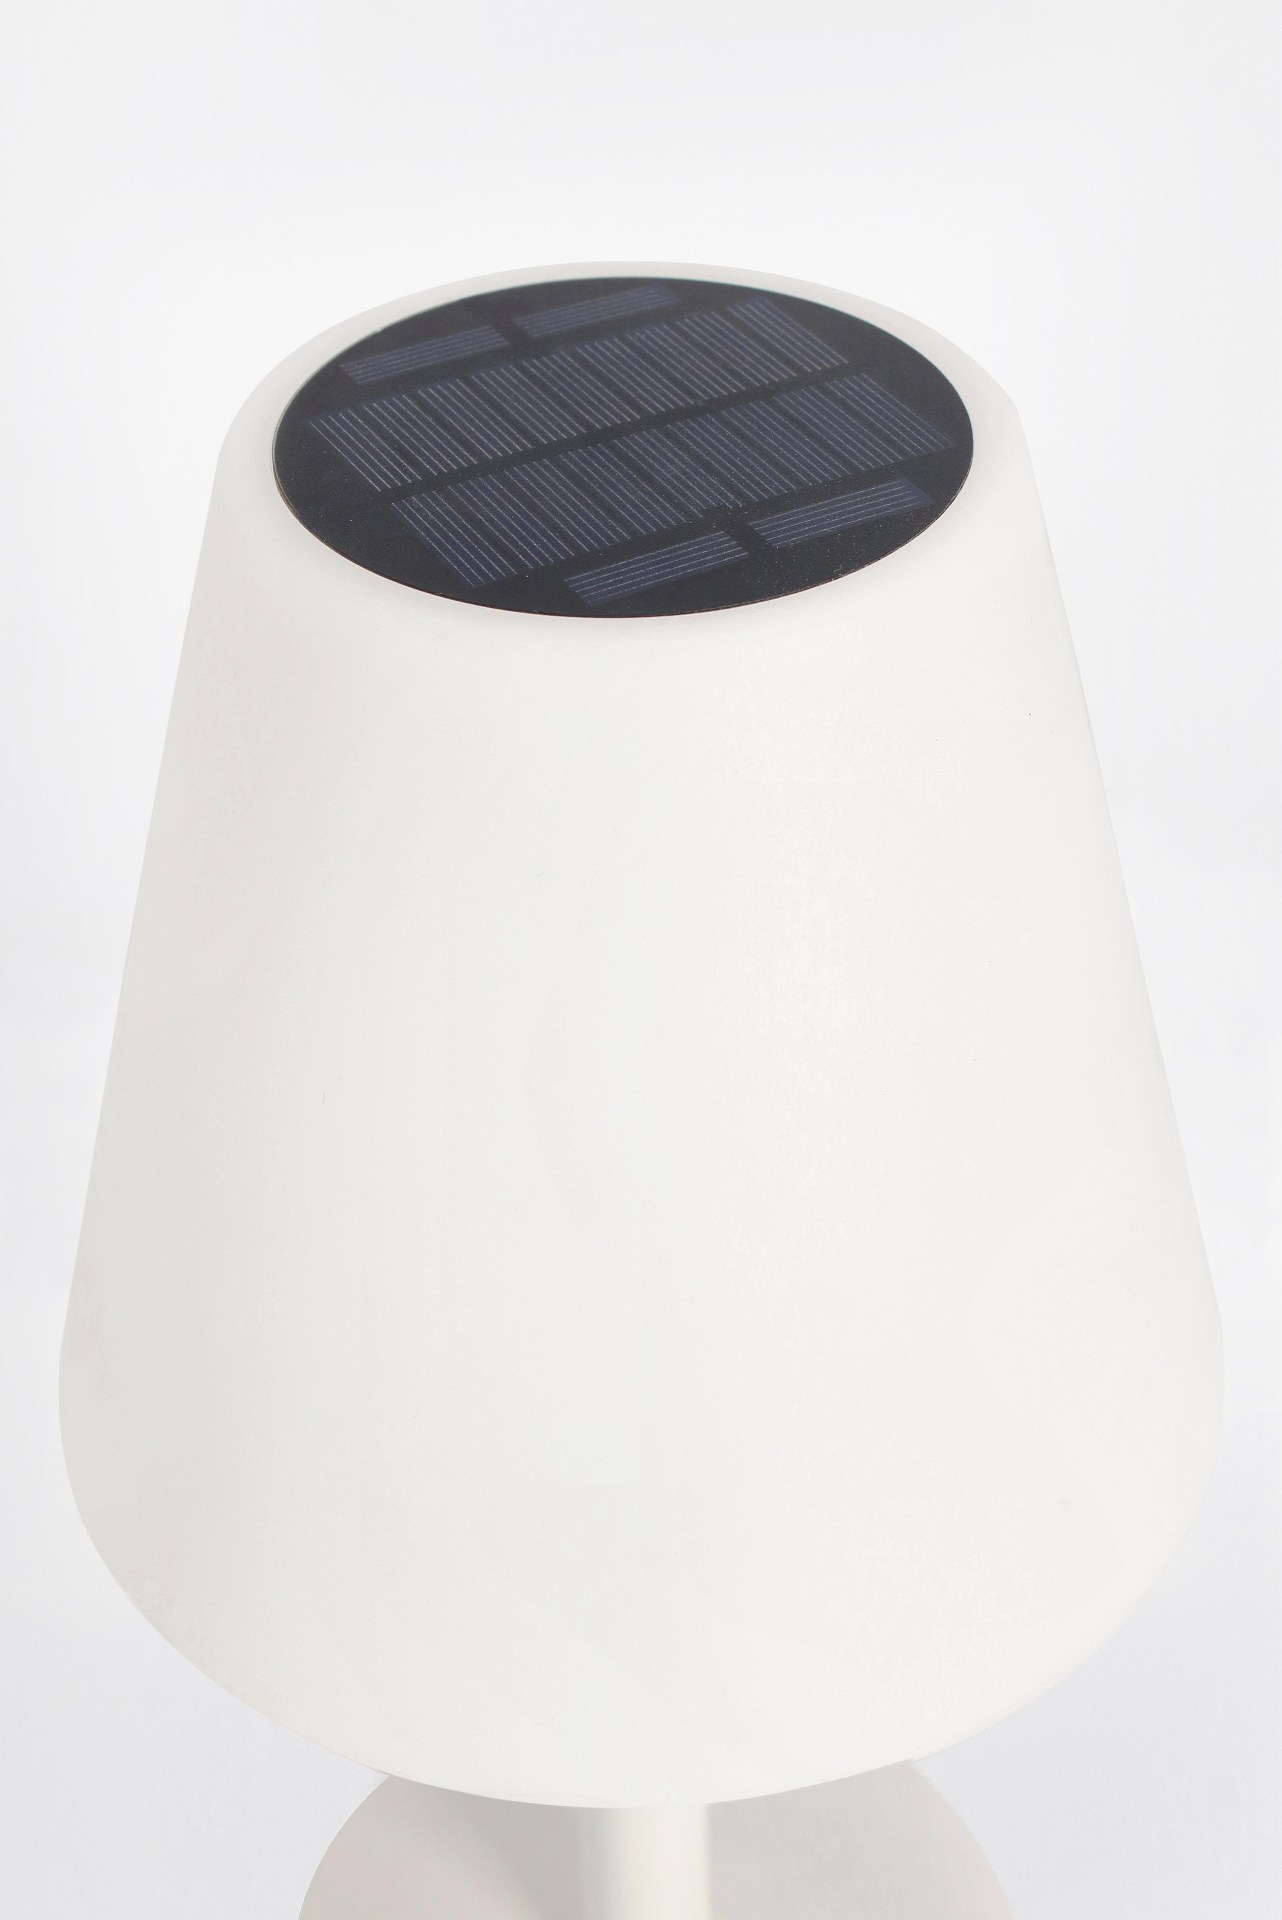 Die Outdoor Lampe Luna überzeugt mit ihrem klassischen Design. Gefertigt wurde sie aus Kunststoff, welches einen weißen Farbton besitzt. Das Gestell ist aus Metall und hat eine weiße Farbe. Die Lampe verfügt über einen Durchmesser von 20 cm und ist für de